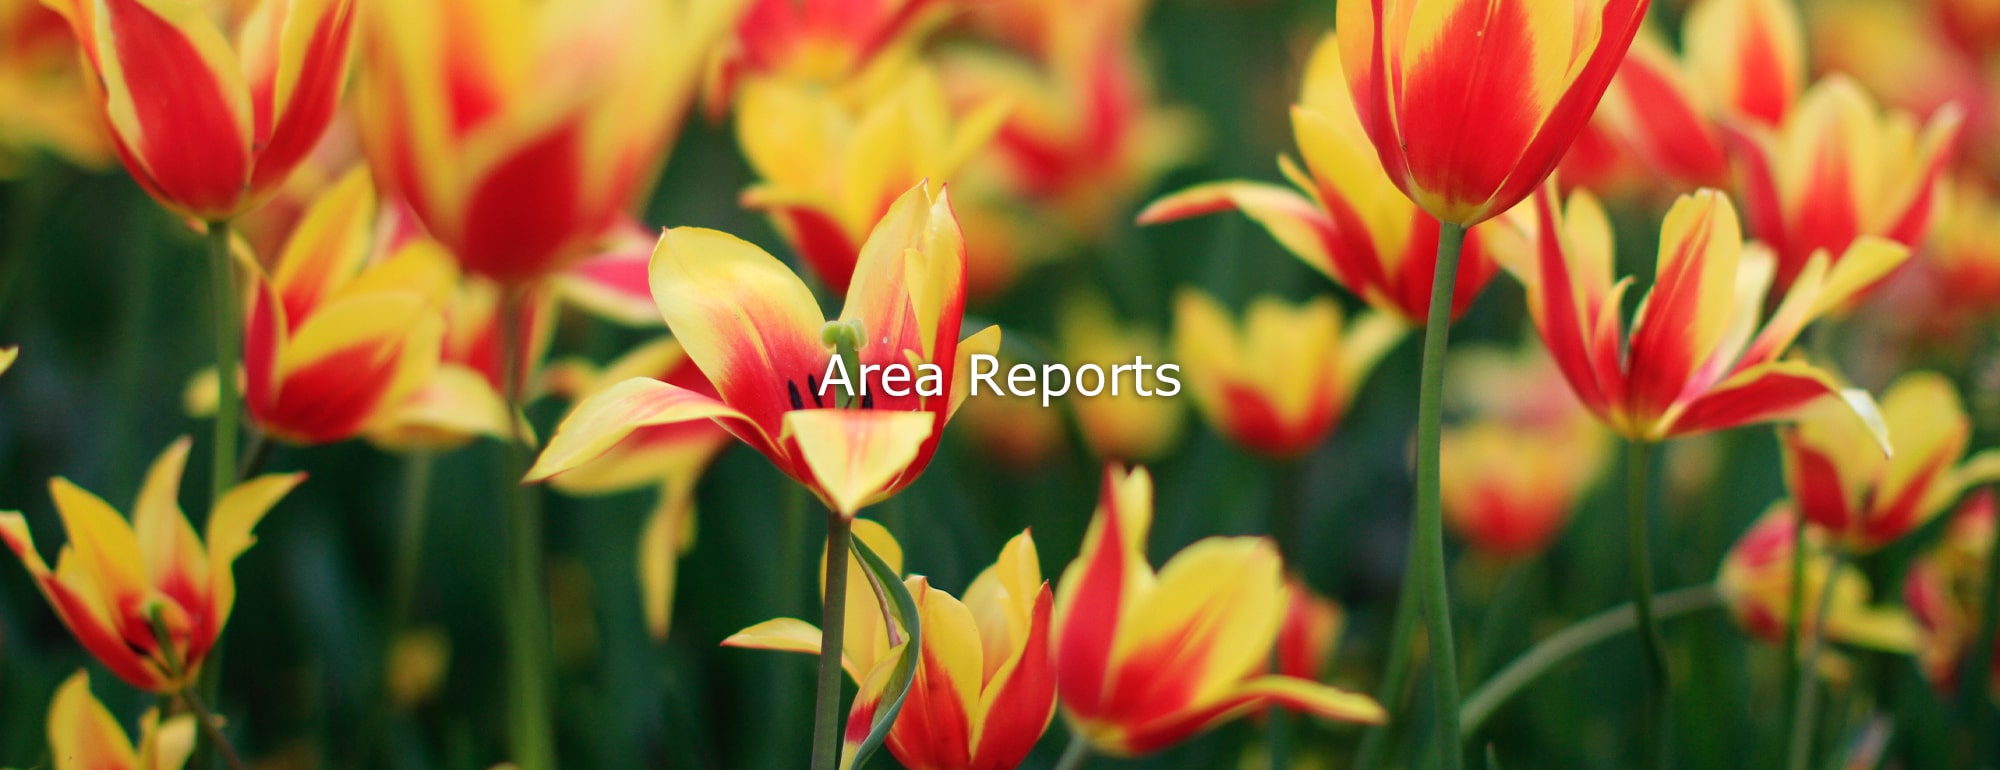 Area Report